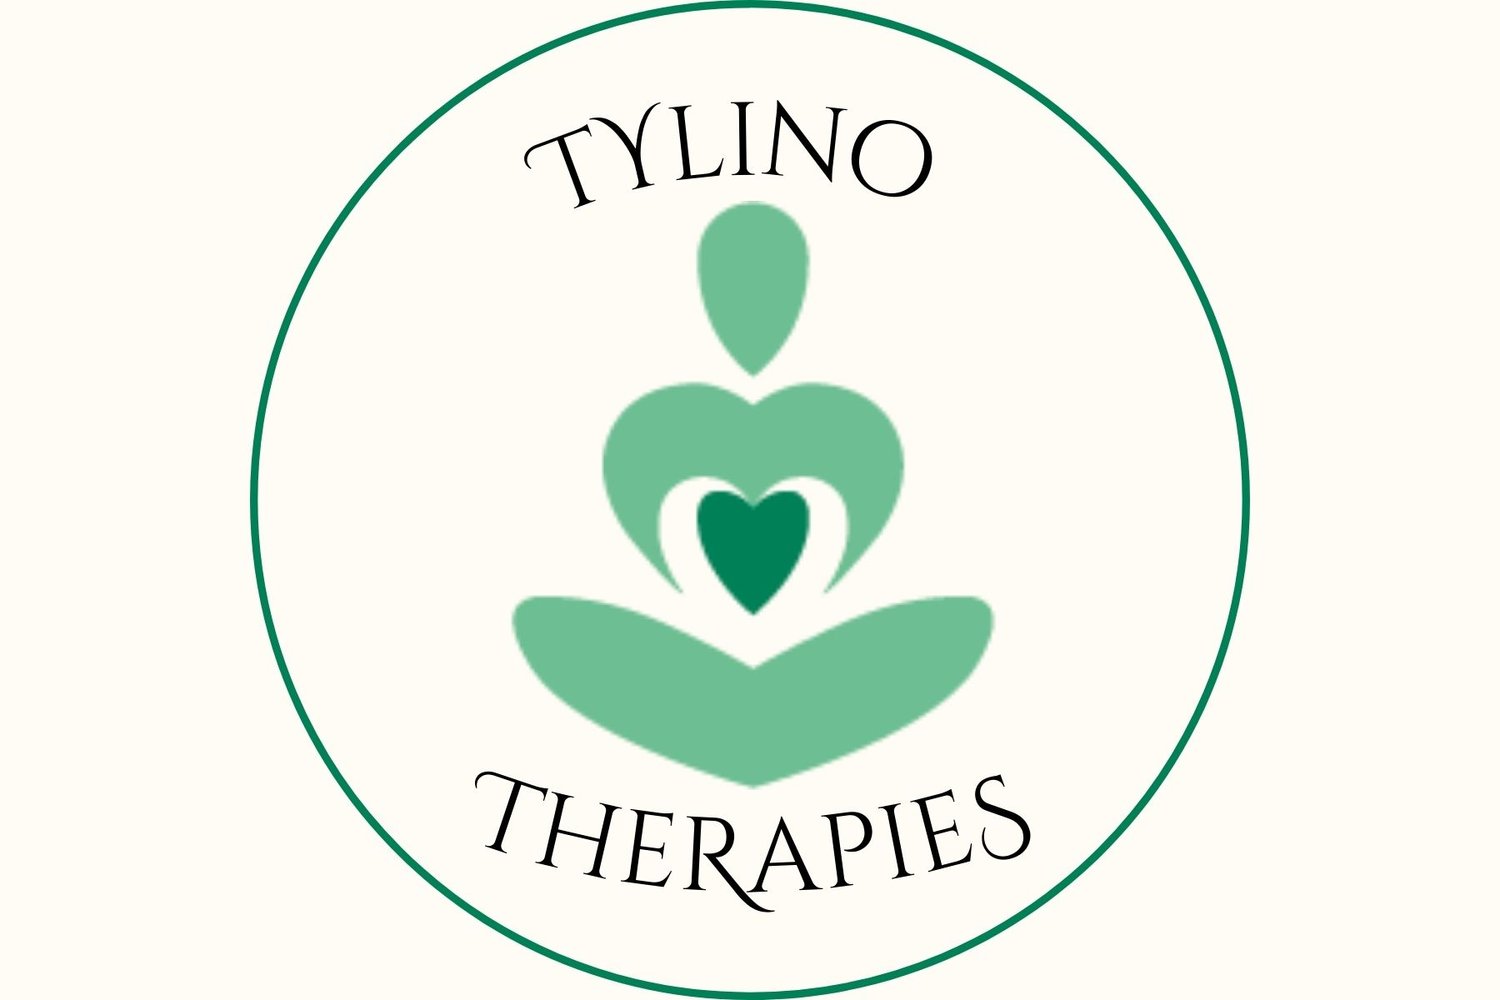 TYLINO THERAPIES